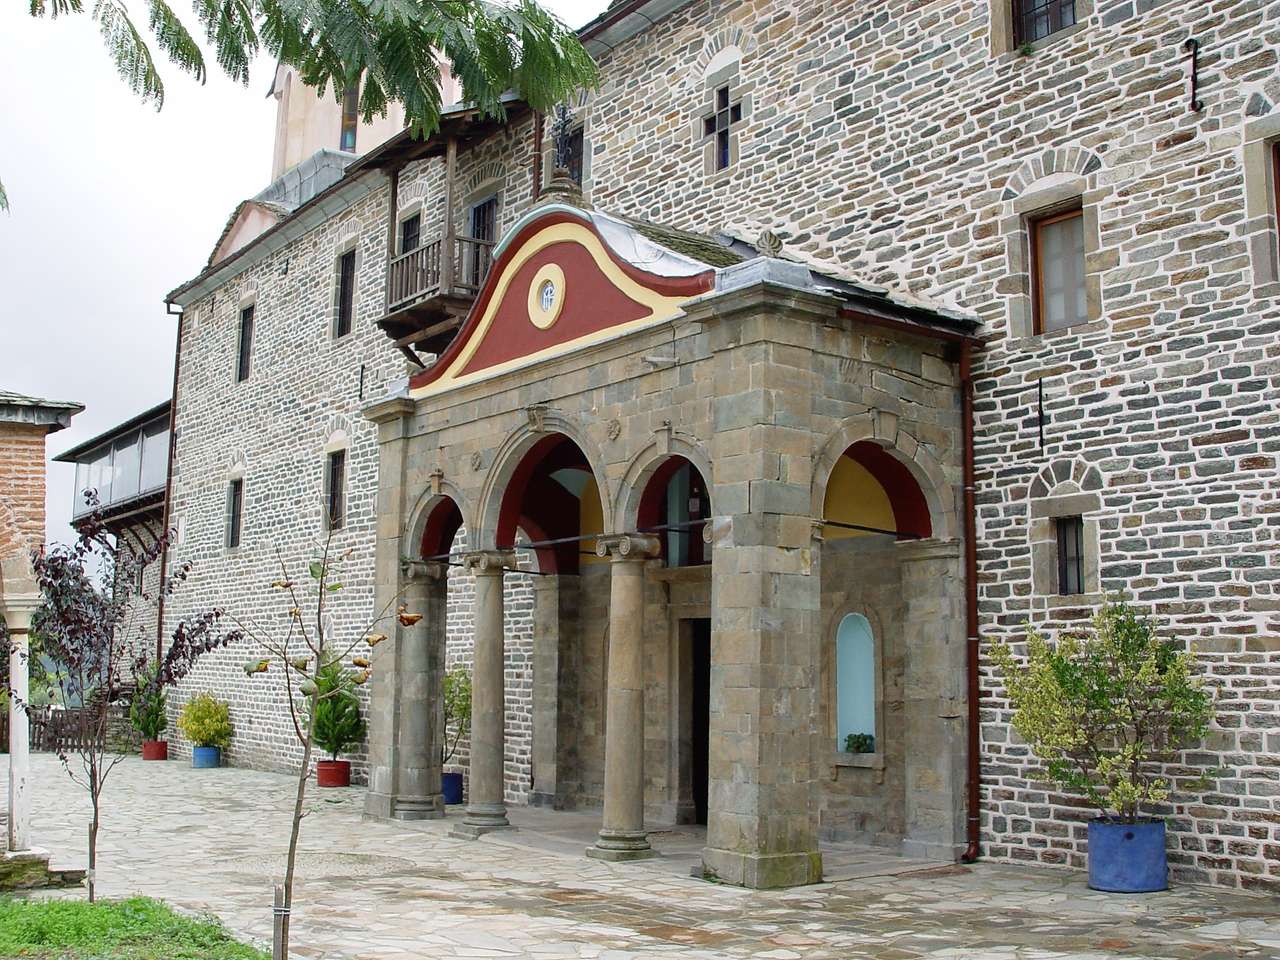 Greece Athos monastery complex Koutloumousiou jigsaw puzzle online